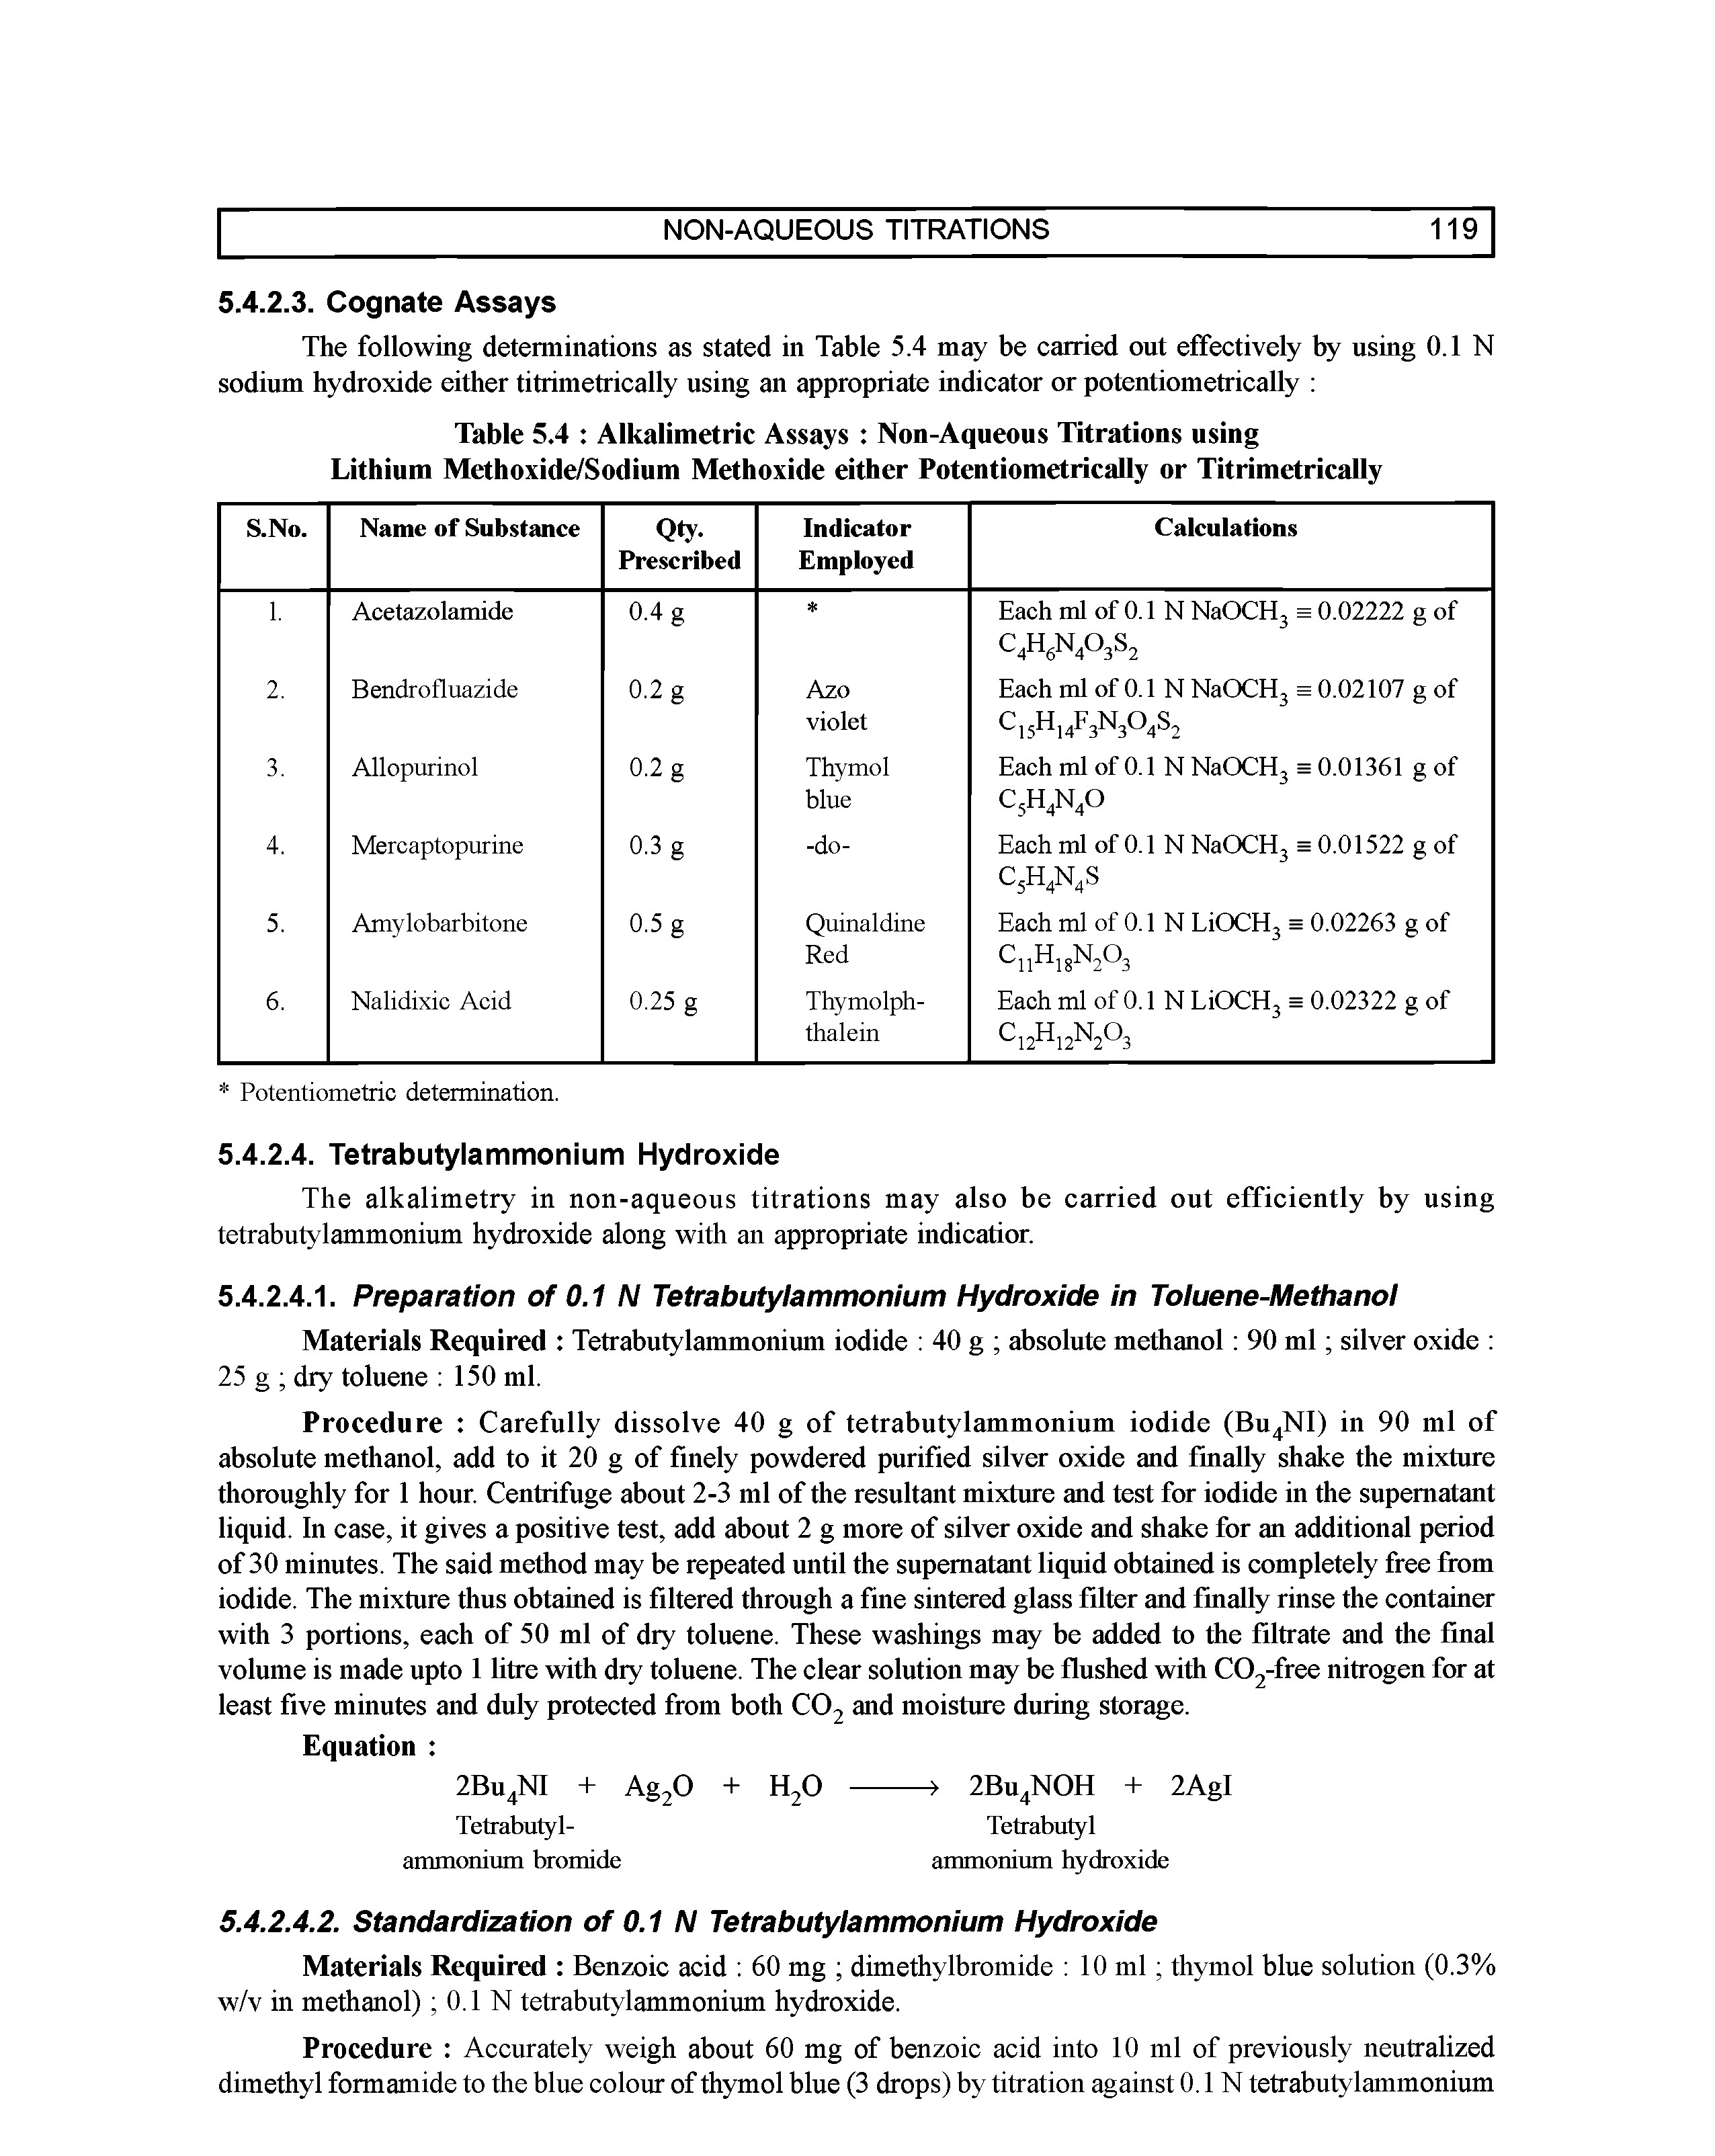 Table 5.4 Alkalimetric Assays Non-Aqueous Titrations using Lithium Methoxide/Sodium Methoxide either Potentiometrically or Titrimetrically...